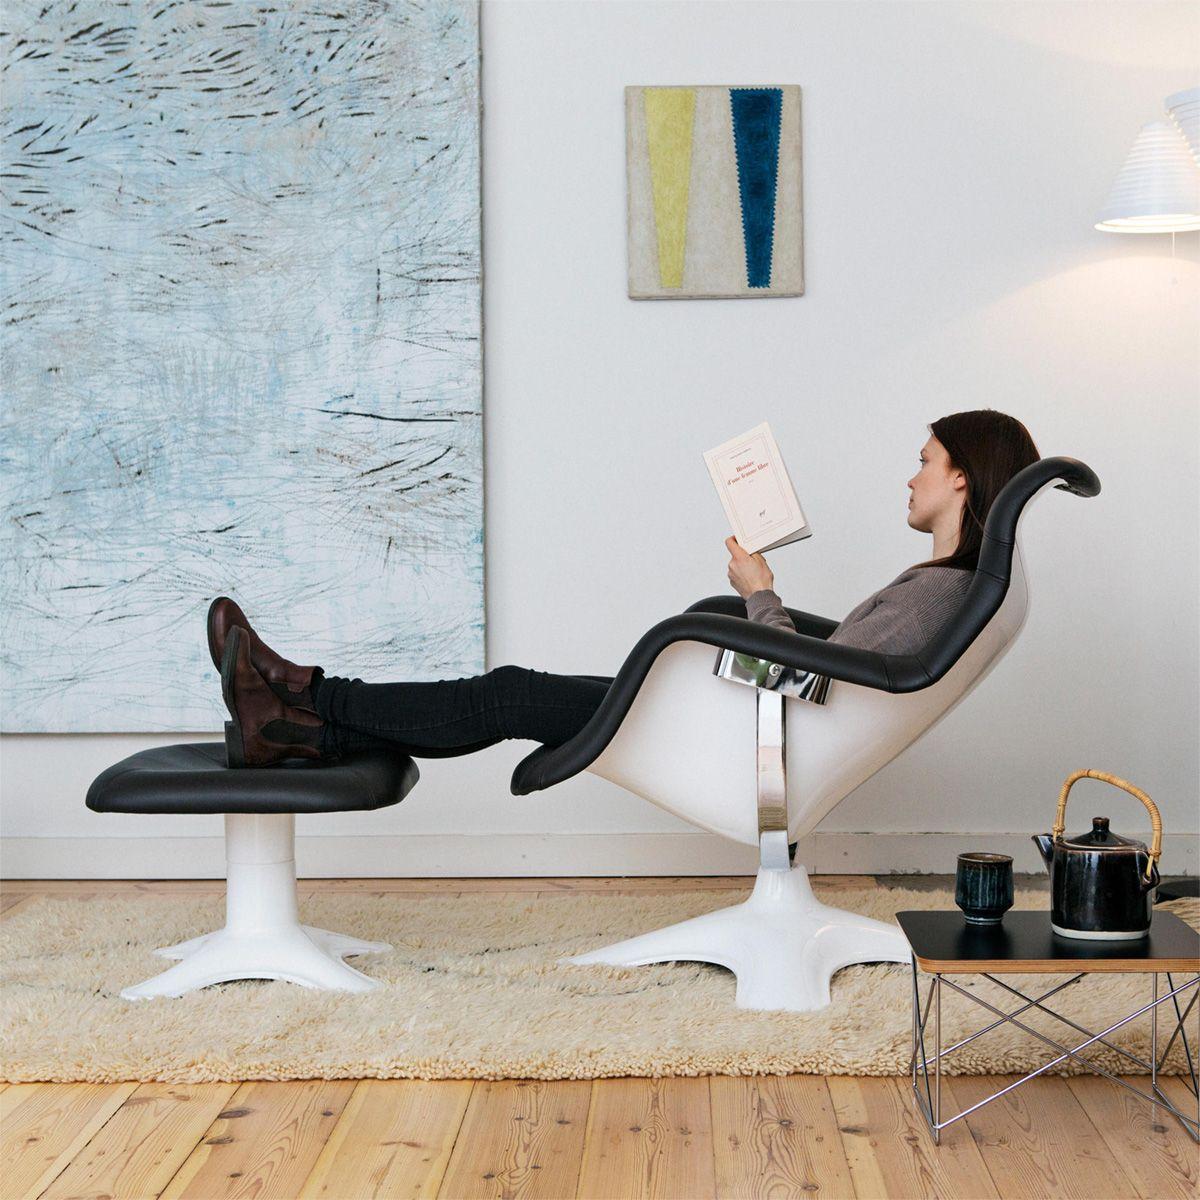 Steel Karuselli Lounge Chair with Red Leather by Yrjö Kukkapuro & Artek